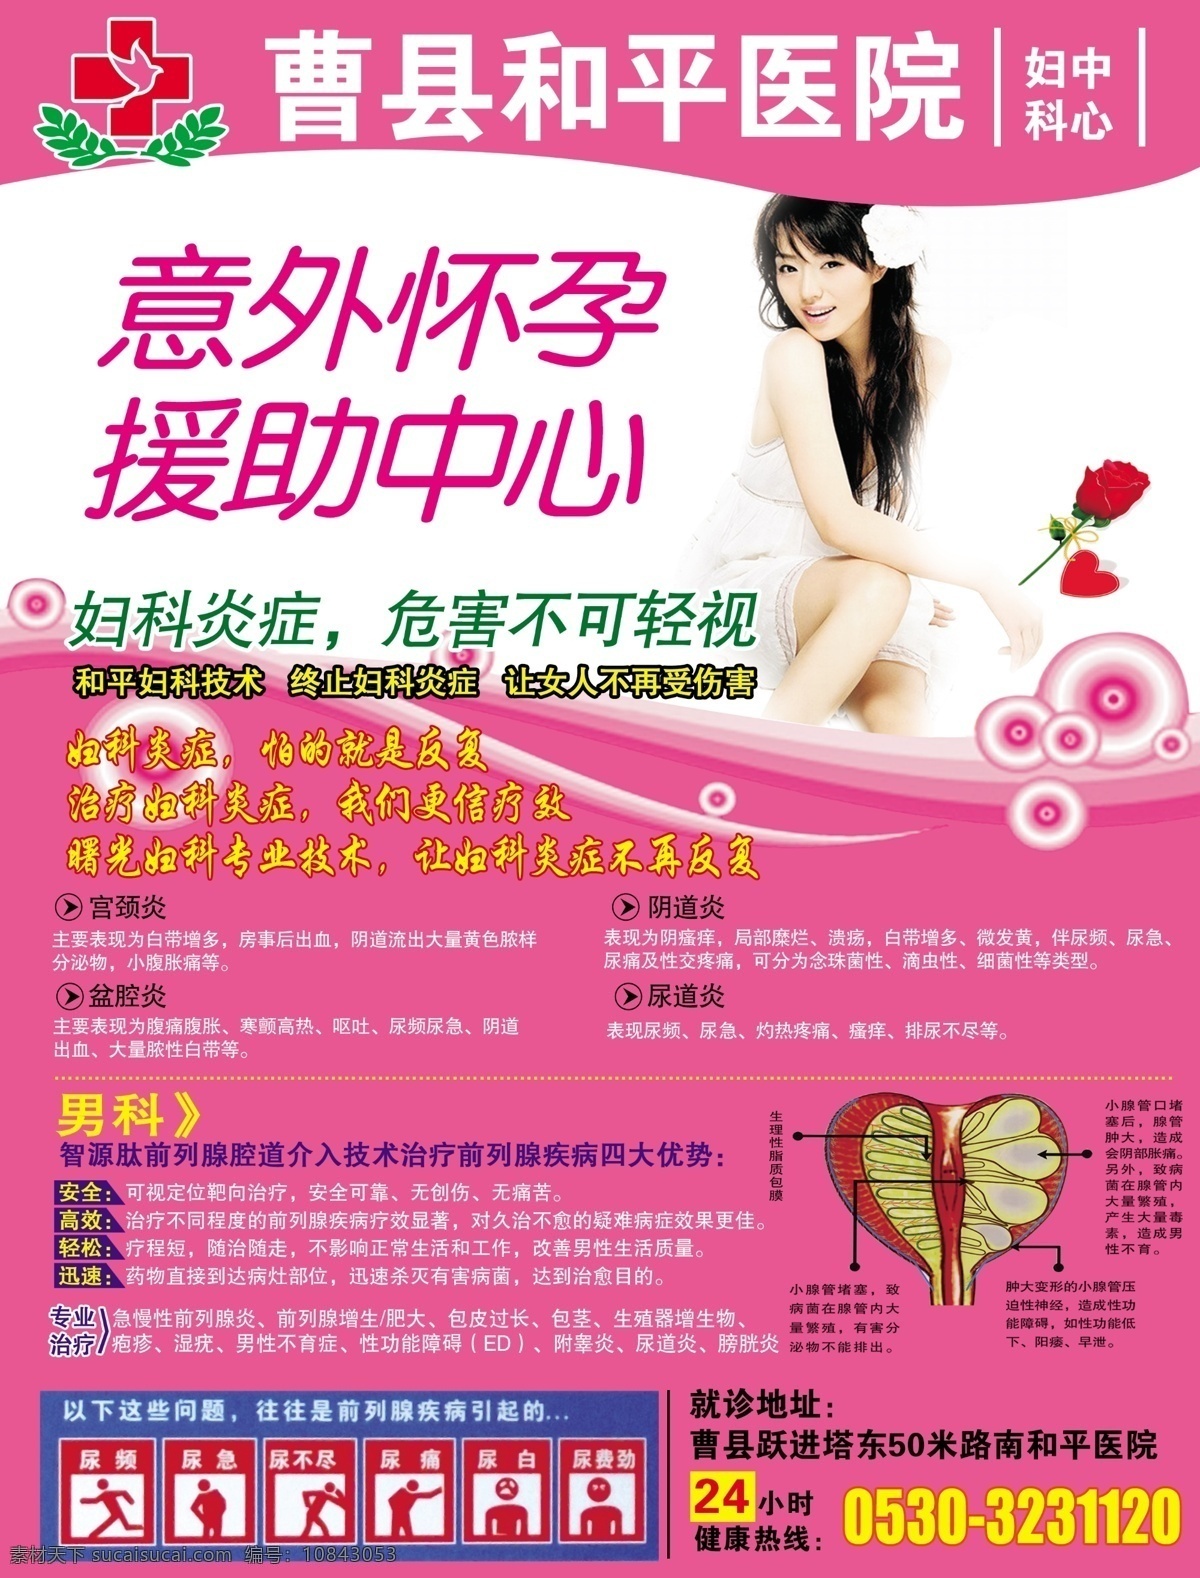 粉色背景 妇科疾病 广告设计模板 美女 男性健康 源文件 曹县和平医院 尿频图标 尿急图标 海报背景图